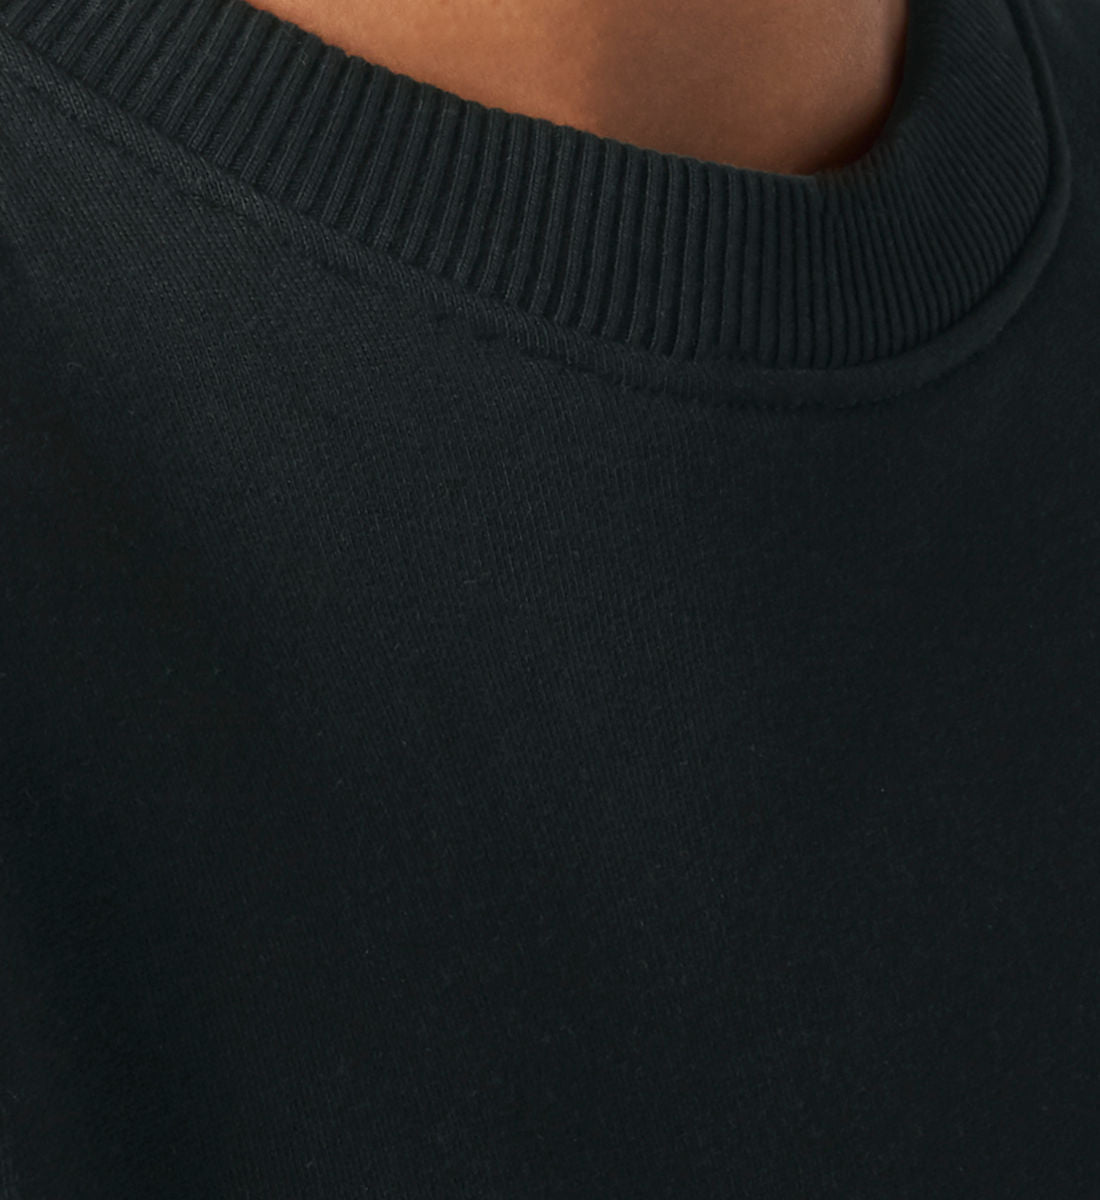 Schwarzes Sweatshirt Unisex für Frauen und Männer bedruckt mit dem Design der Roger Rockawoo Kollektion Everybody loves Shredders